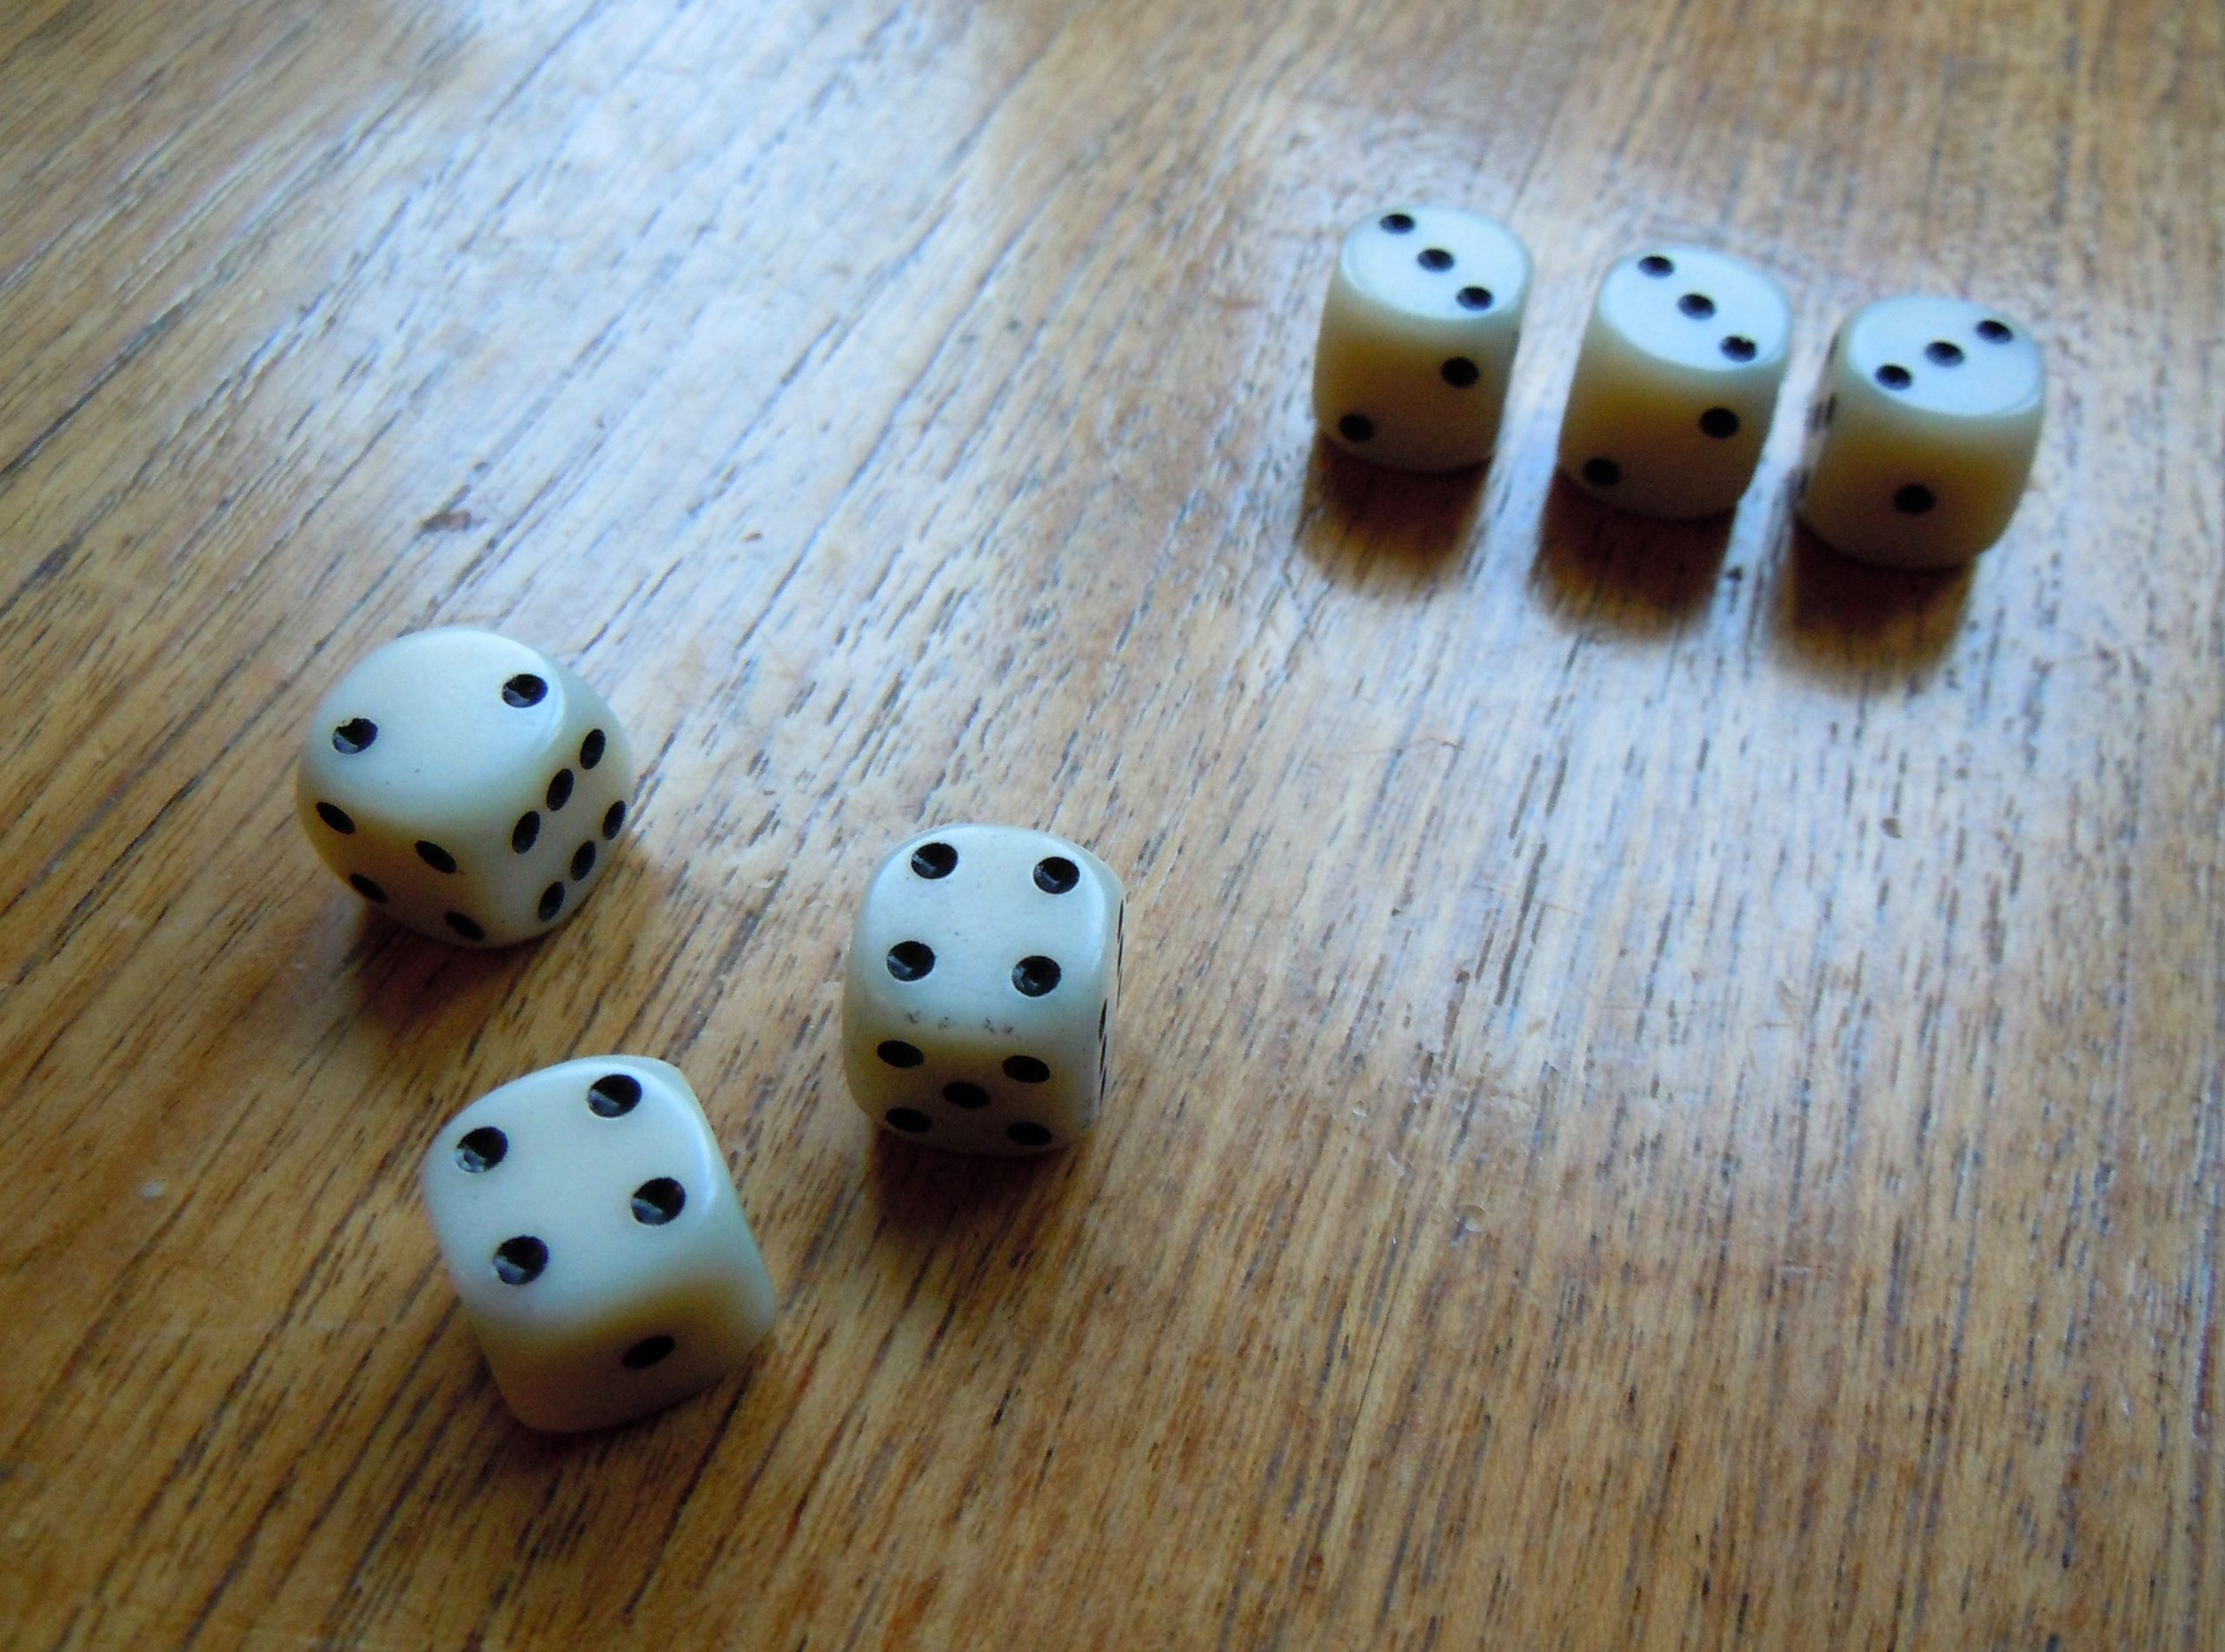 Six Farkle dice